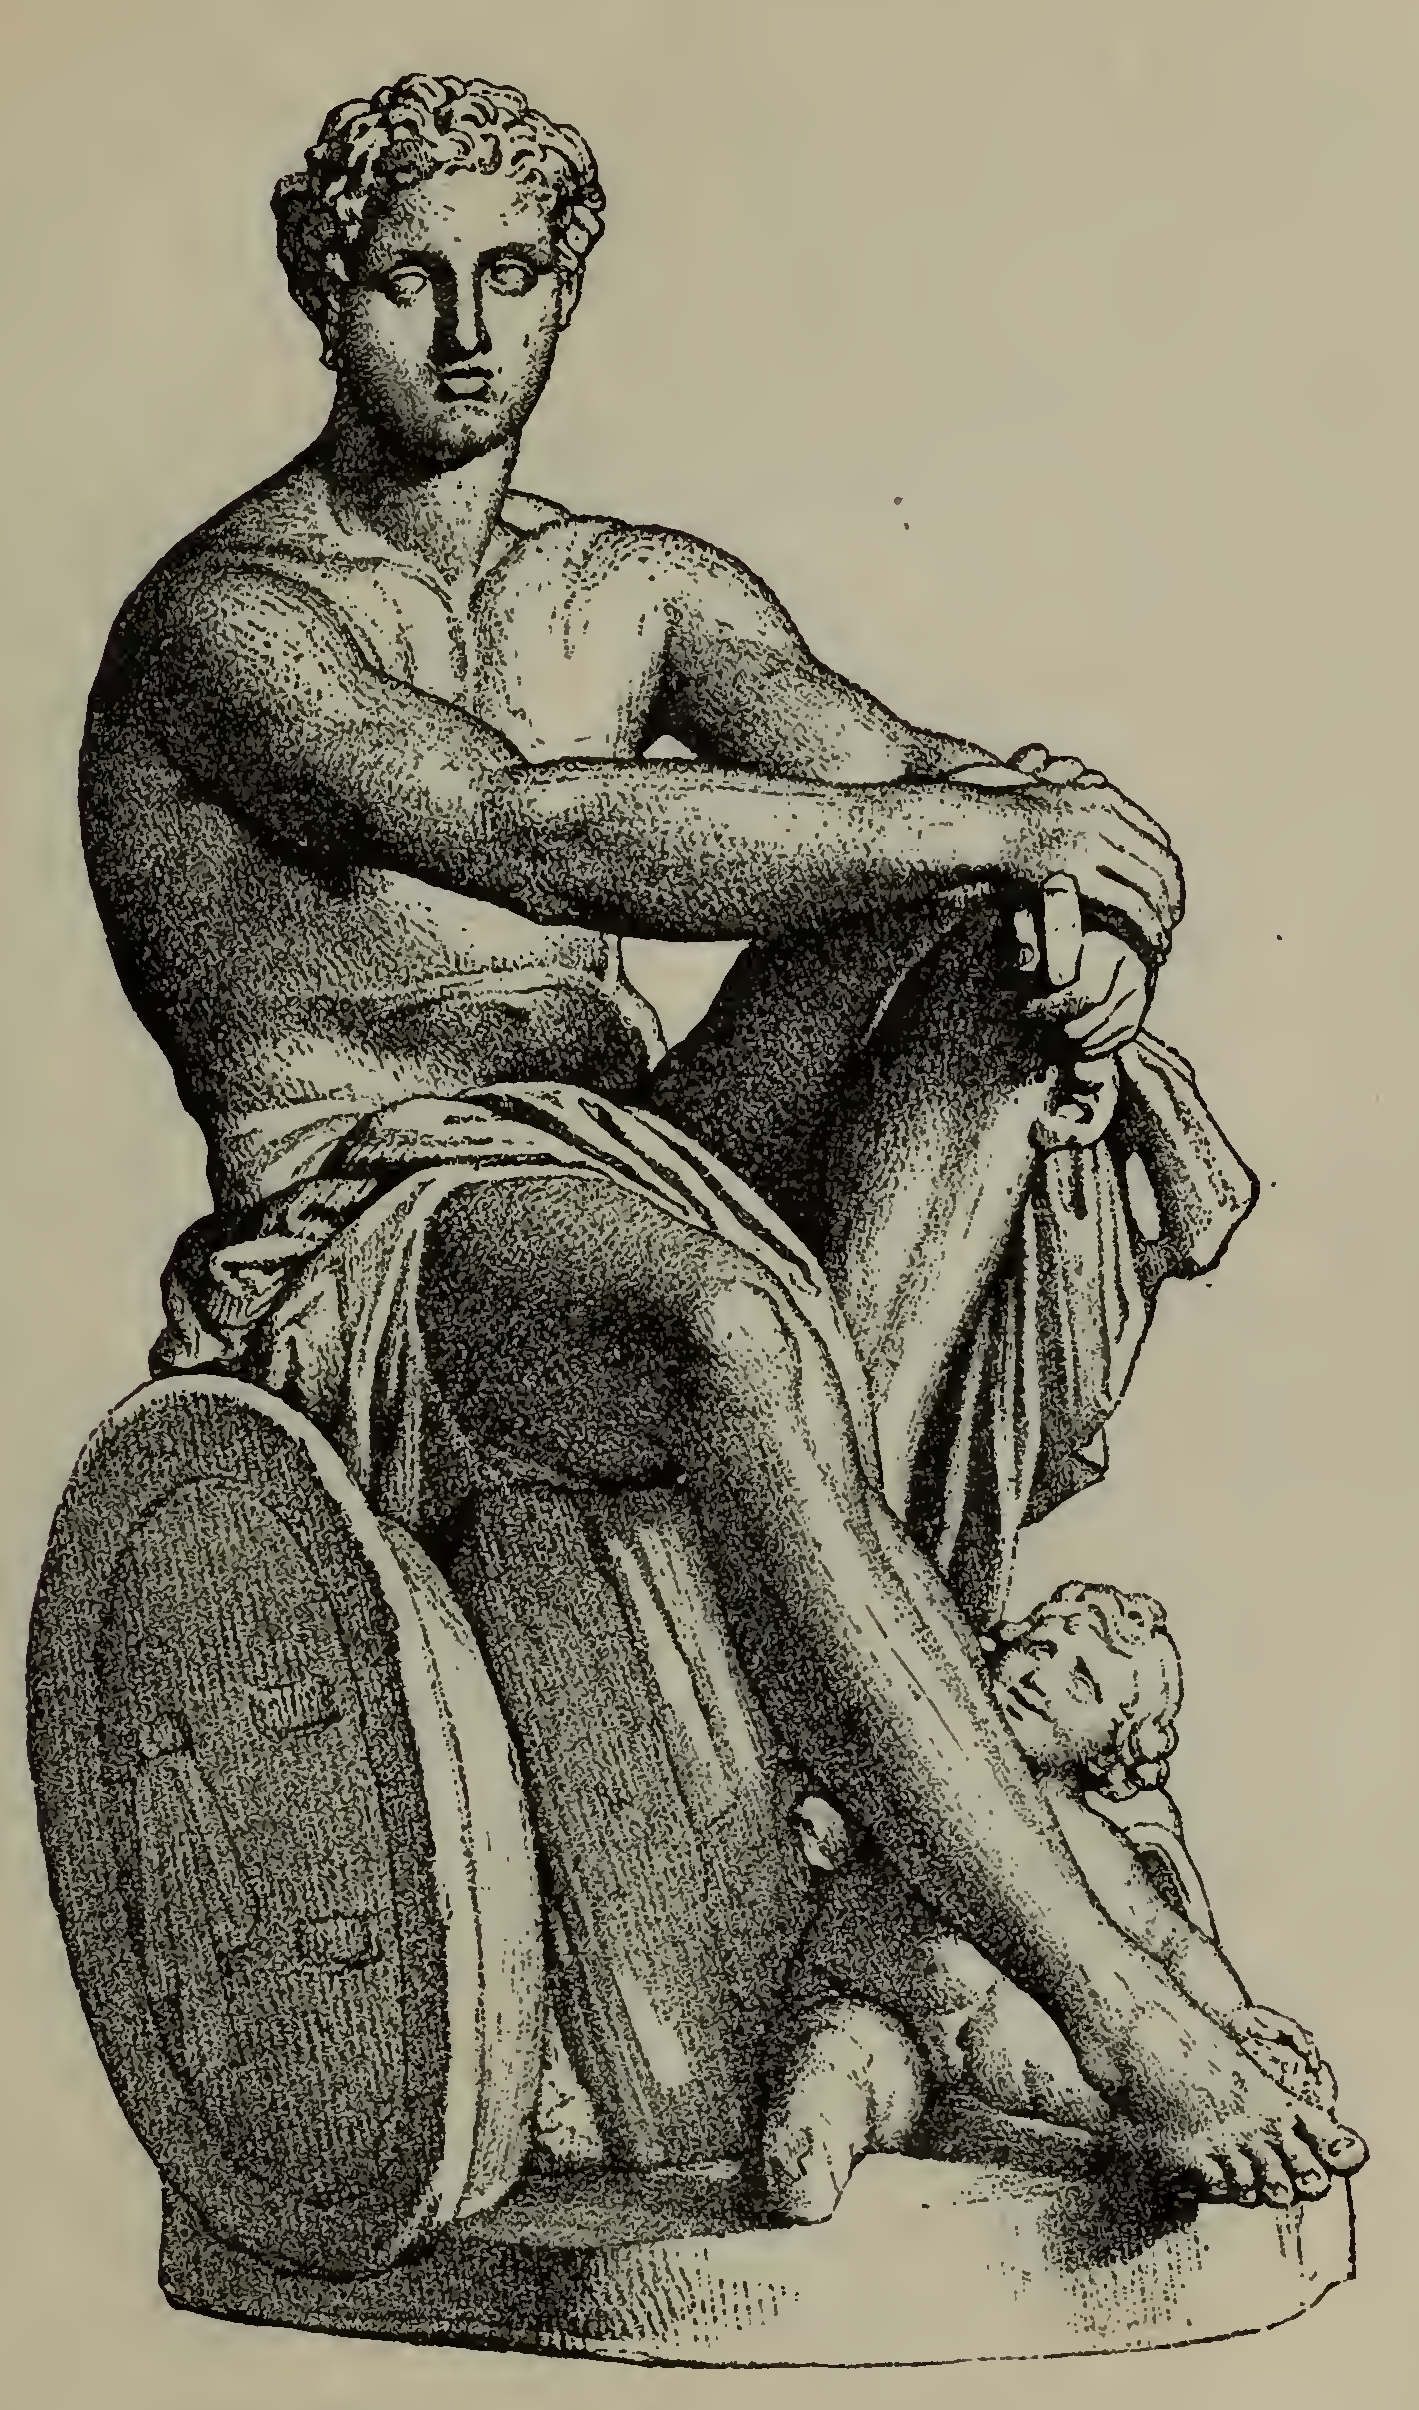 Ares, Greek God Of War, Lemon & Olives